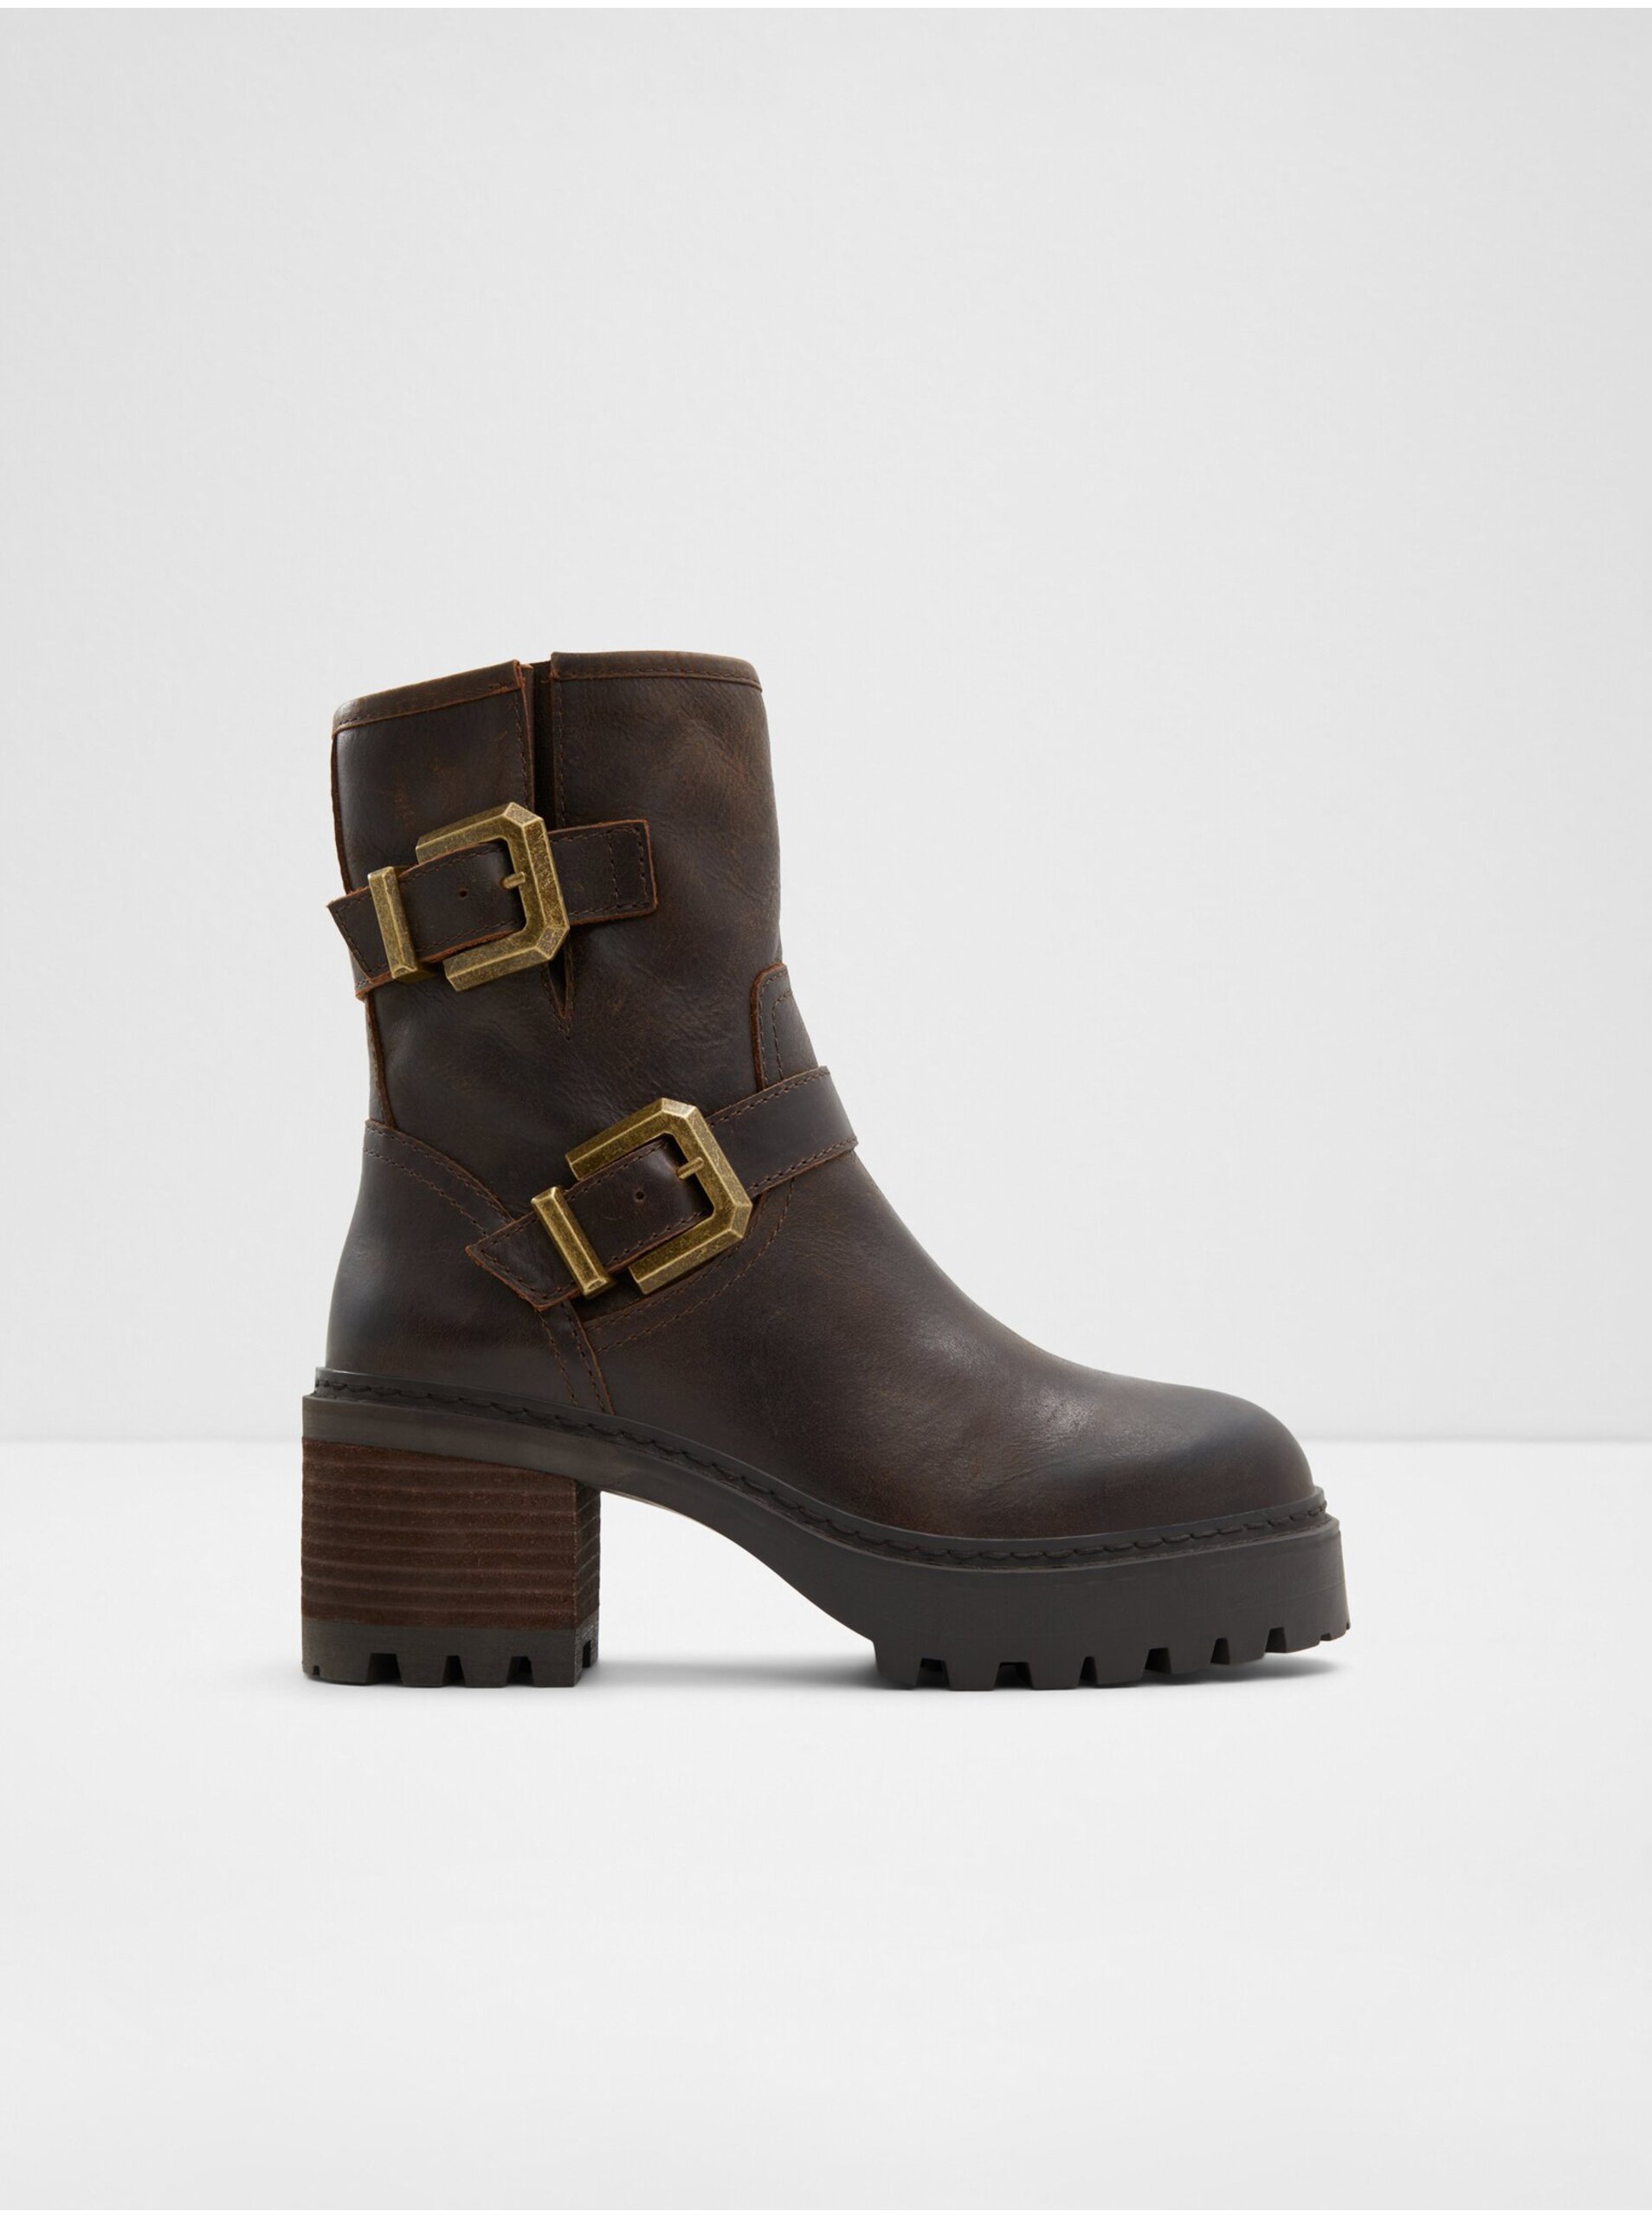 E-shop Tmavě hnědé dámské kožené kotníkové boty ALDO Palomina